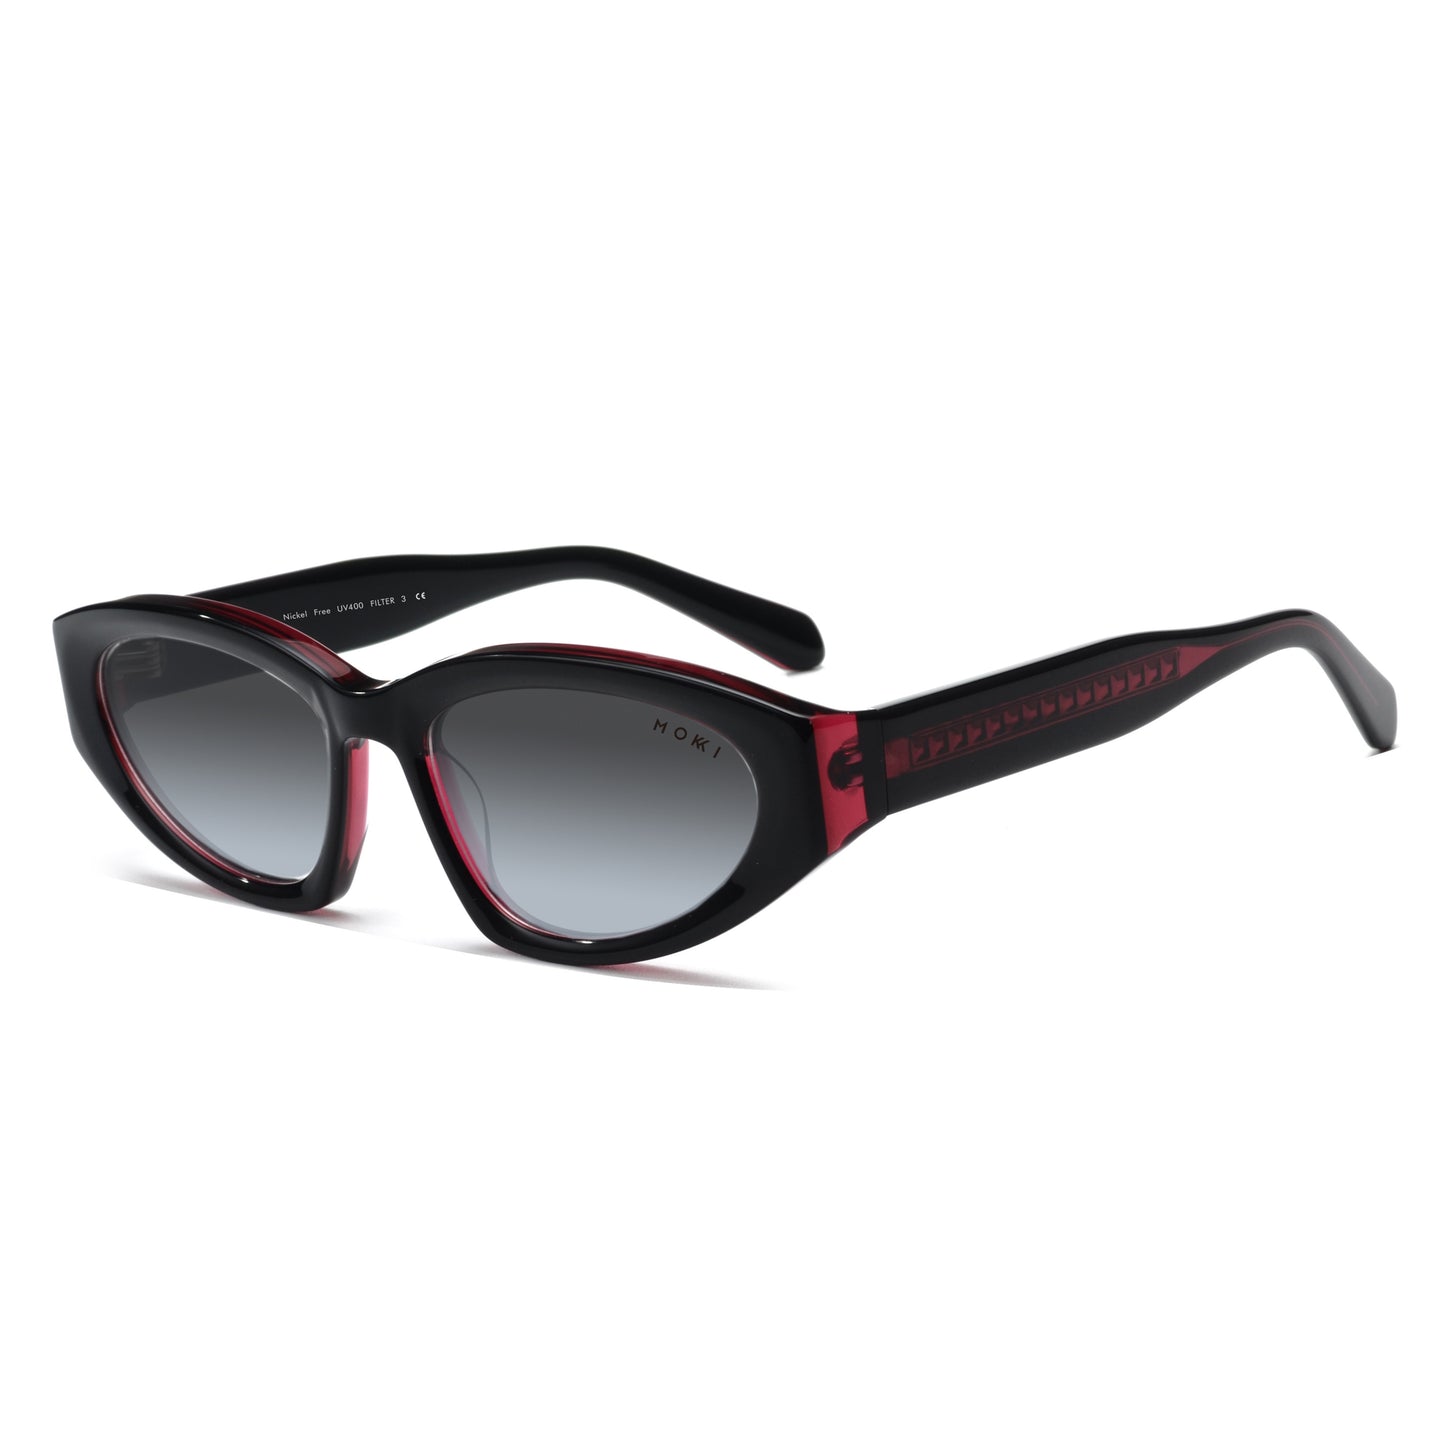 Mokki Streamlined Slim Sunglasses in dark red